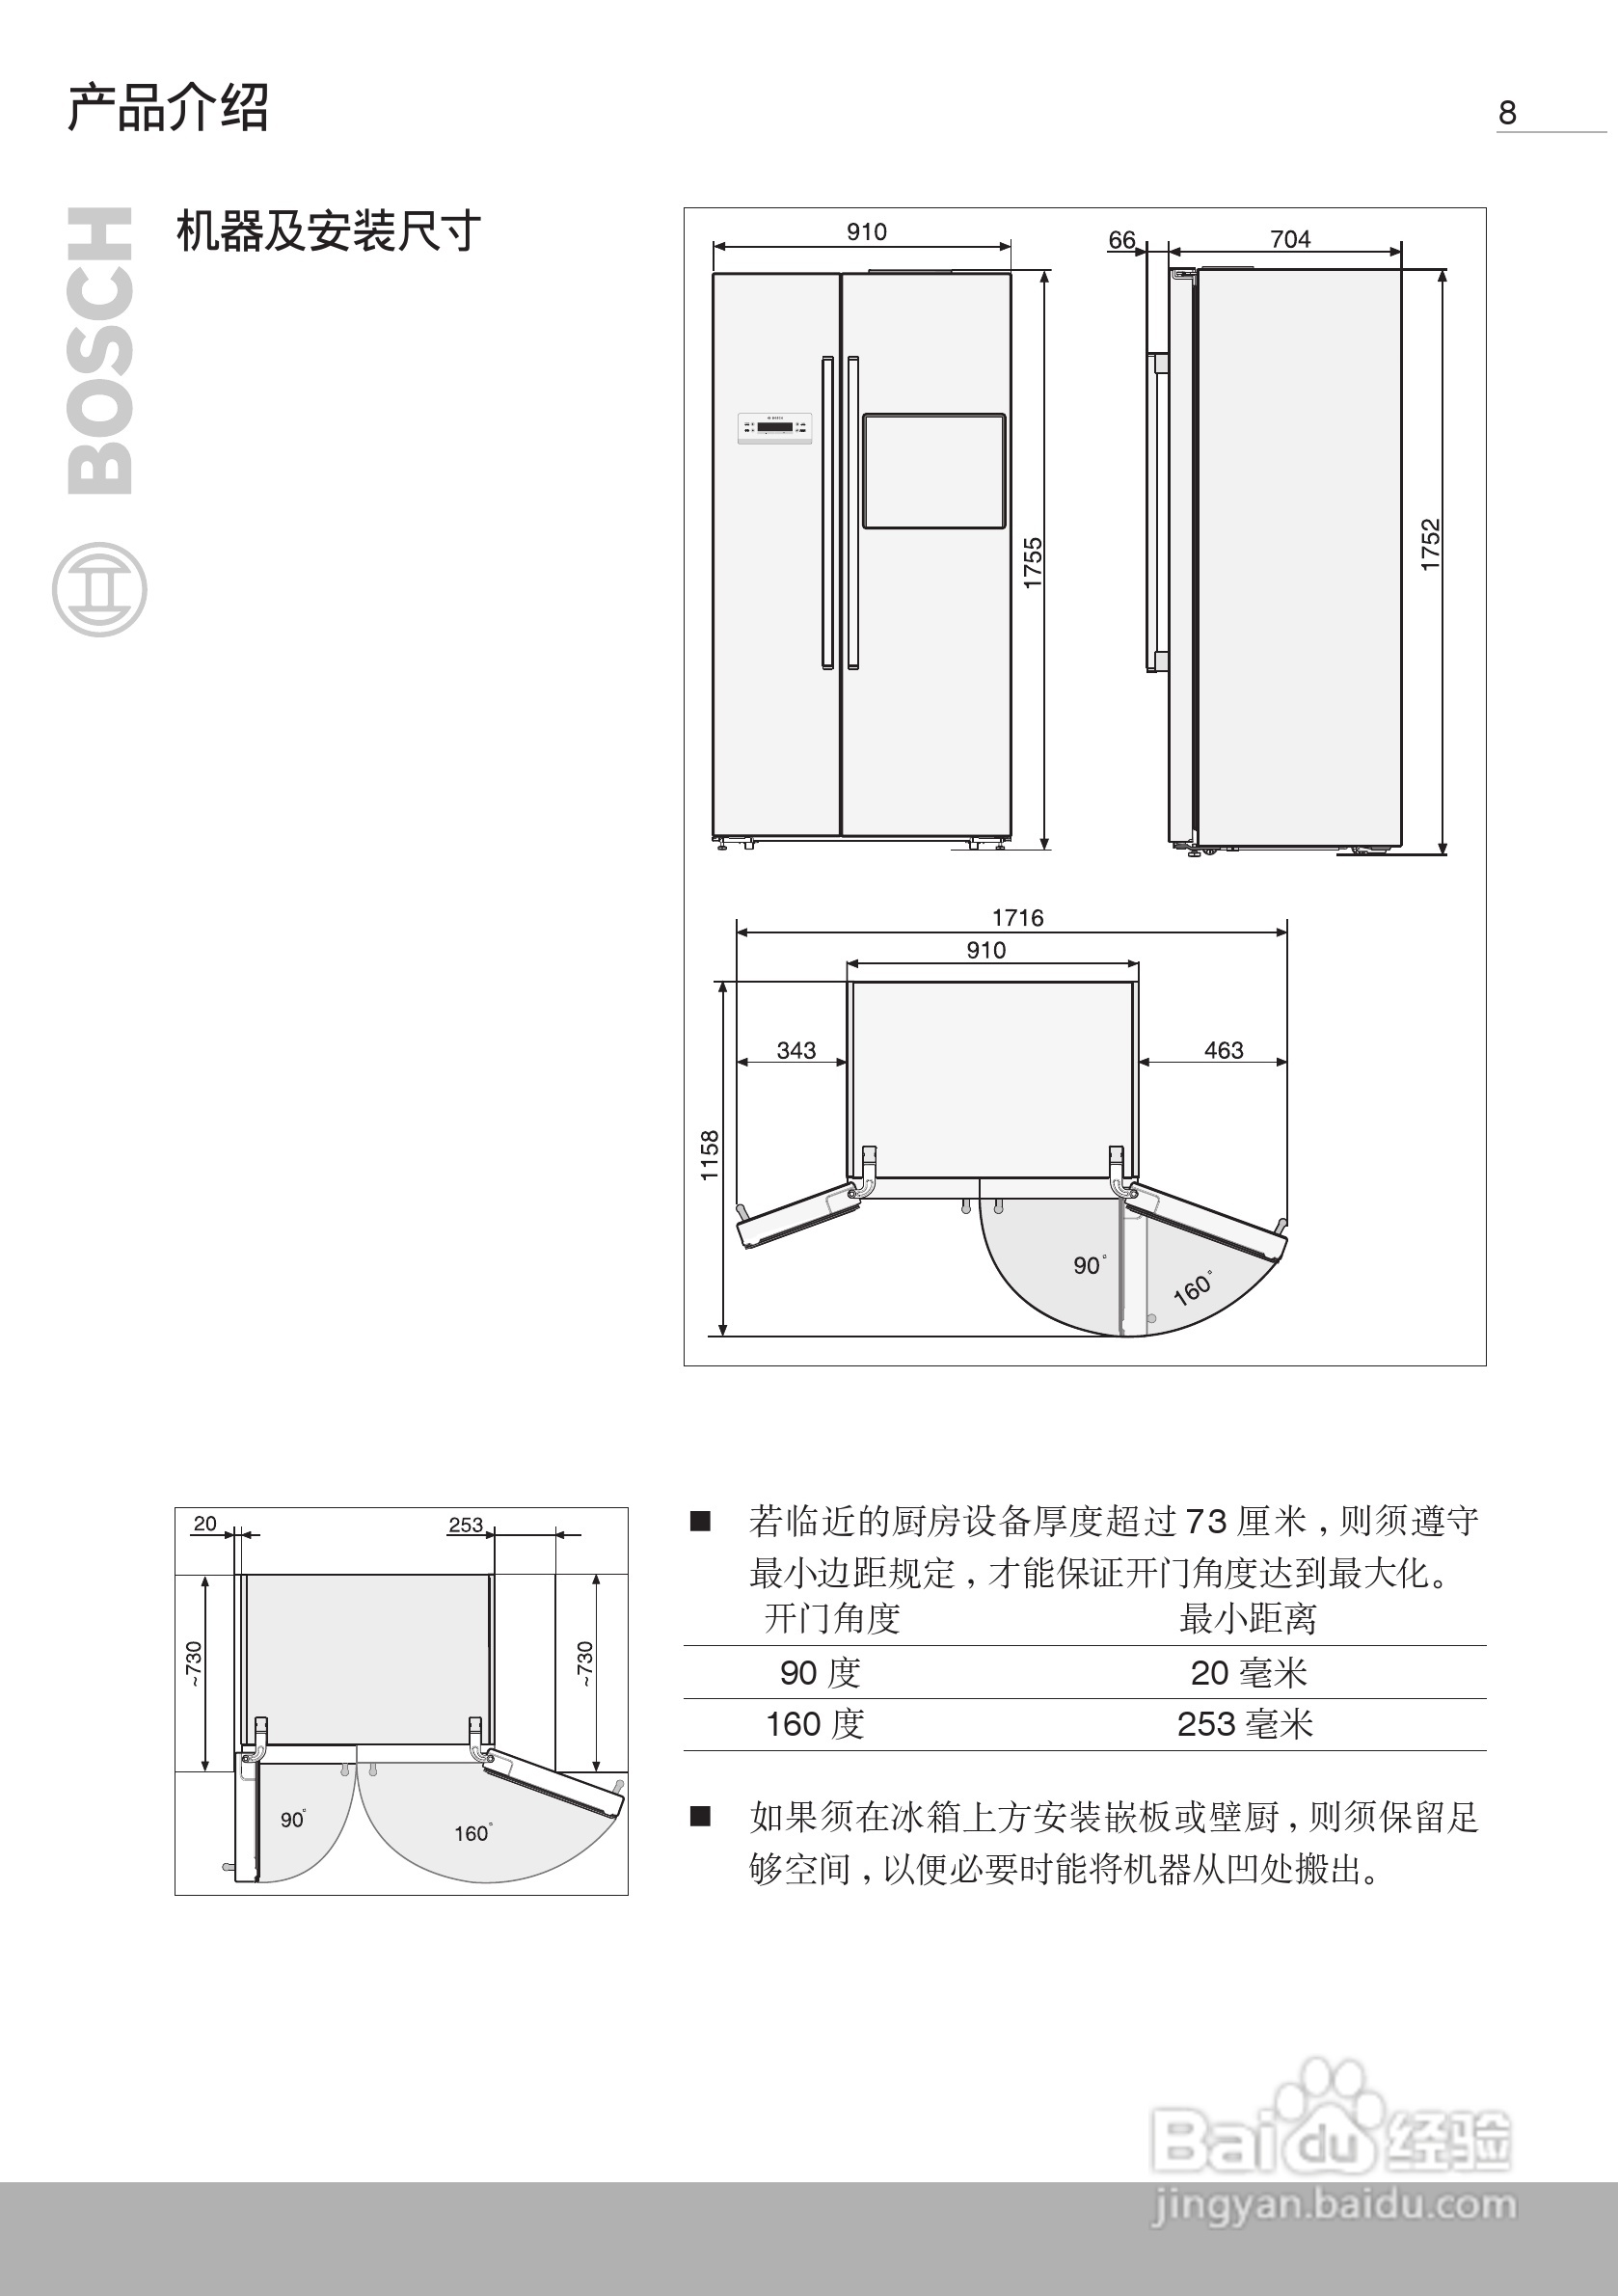 博世kan62v40ti 双开门家用电冰箱使用说明书:[1]